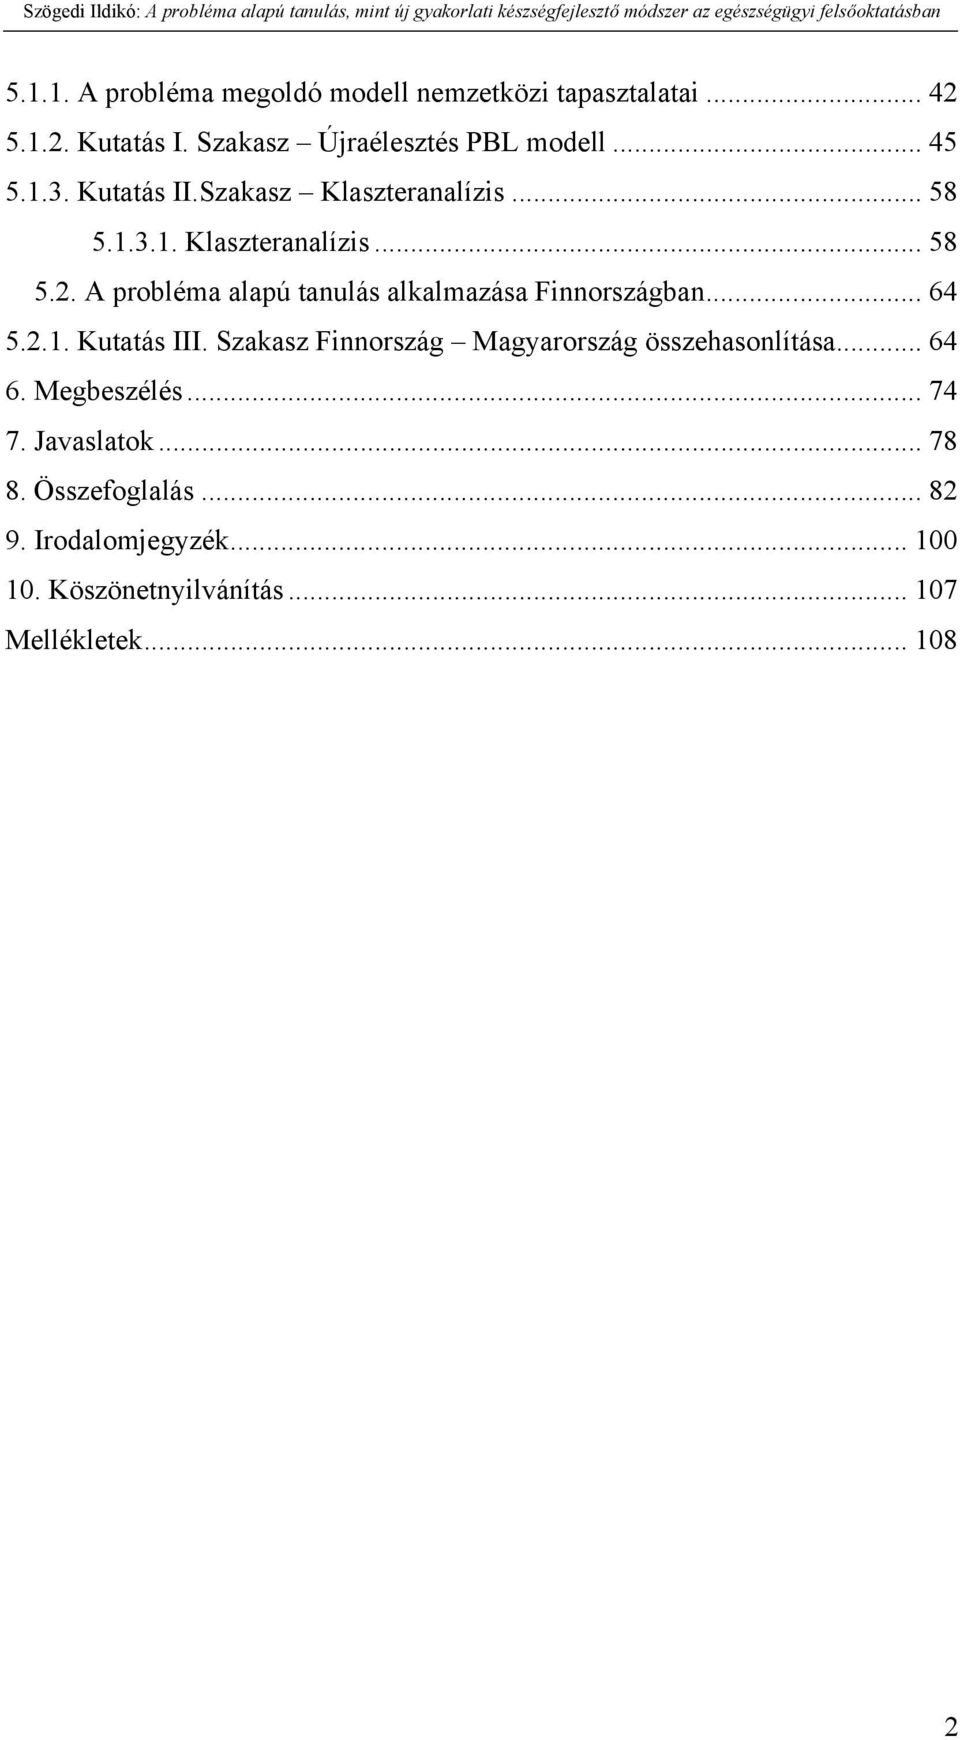 A probléma alapú tanulás alkalmazása Finnországban... 64 5.2.1. Kutatás III.